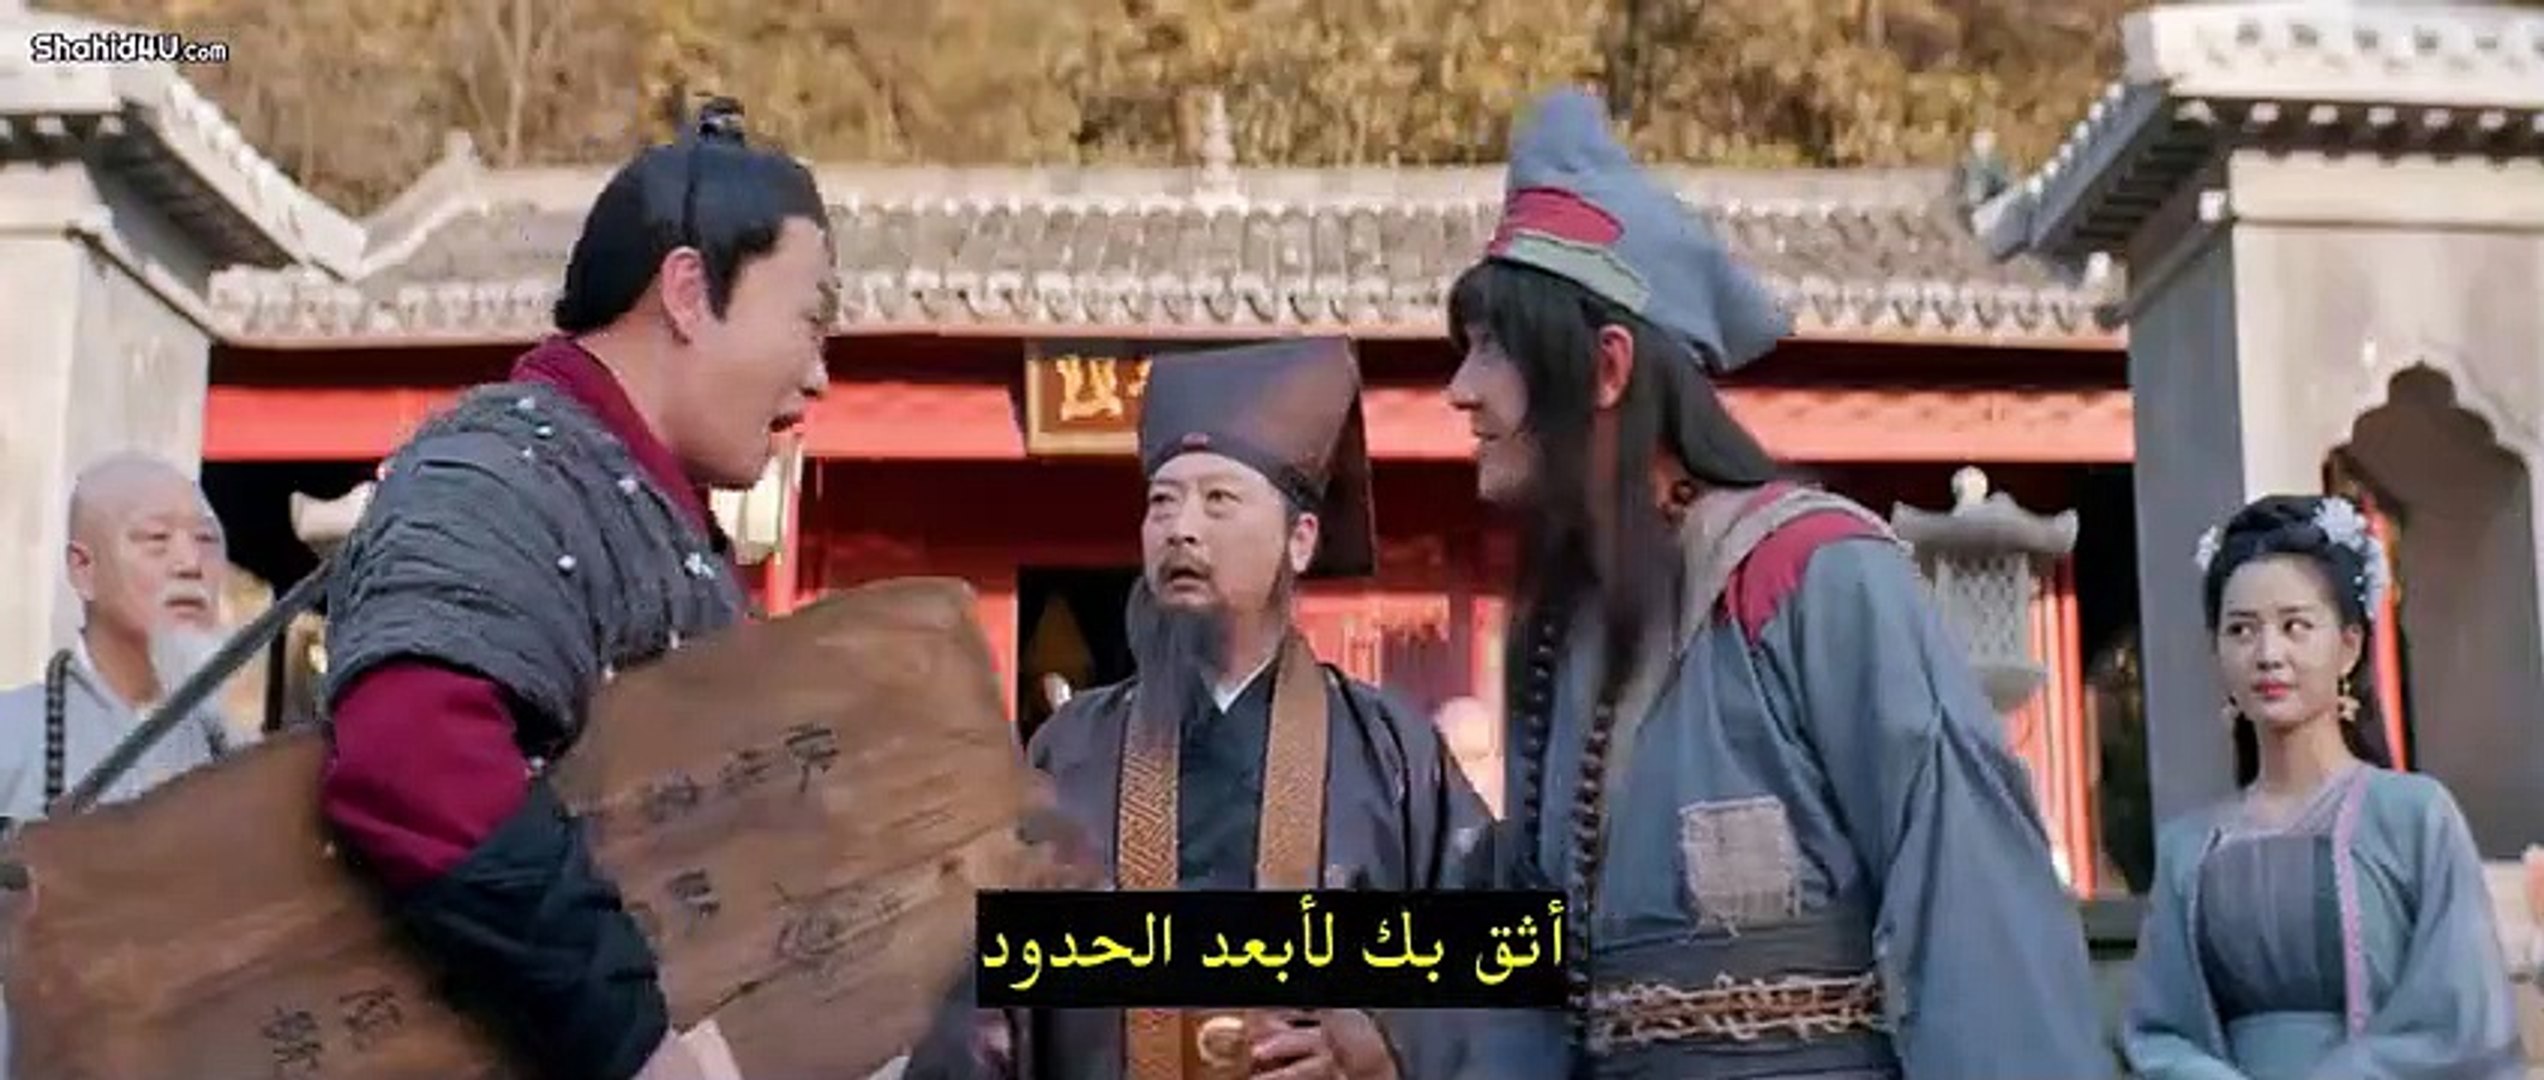 الفيلم الصيني الراهب المجنون 2|فانتازيا كوميدي